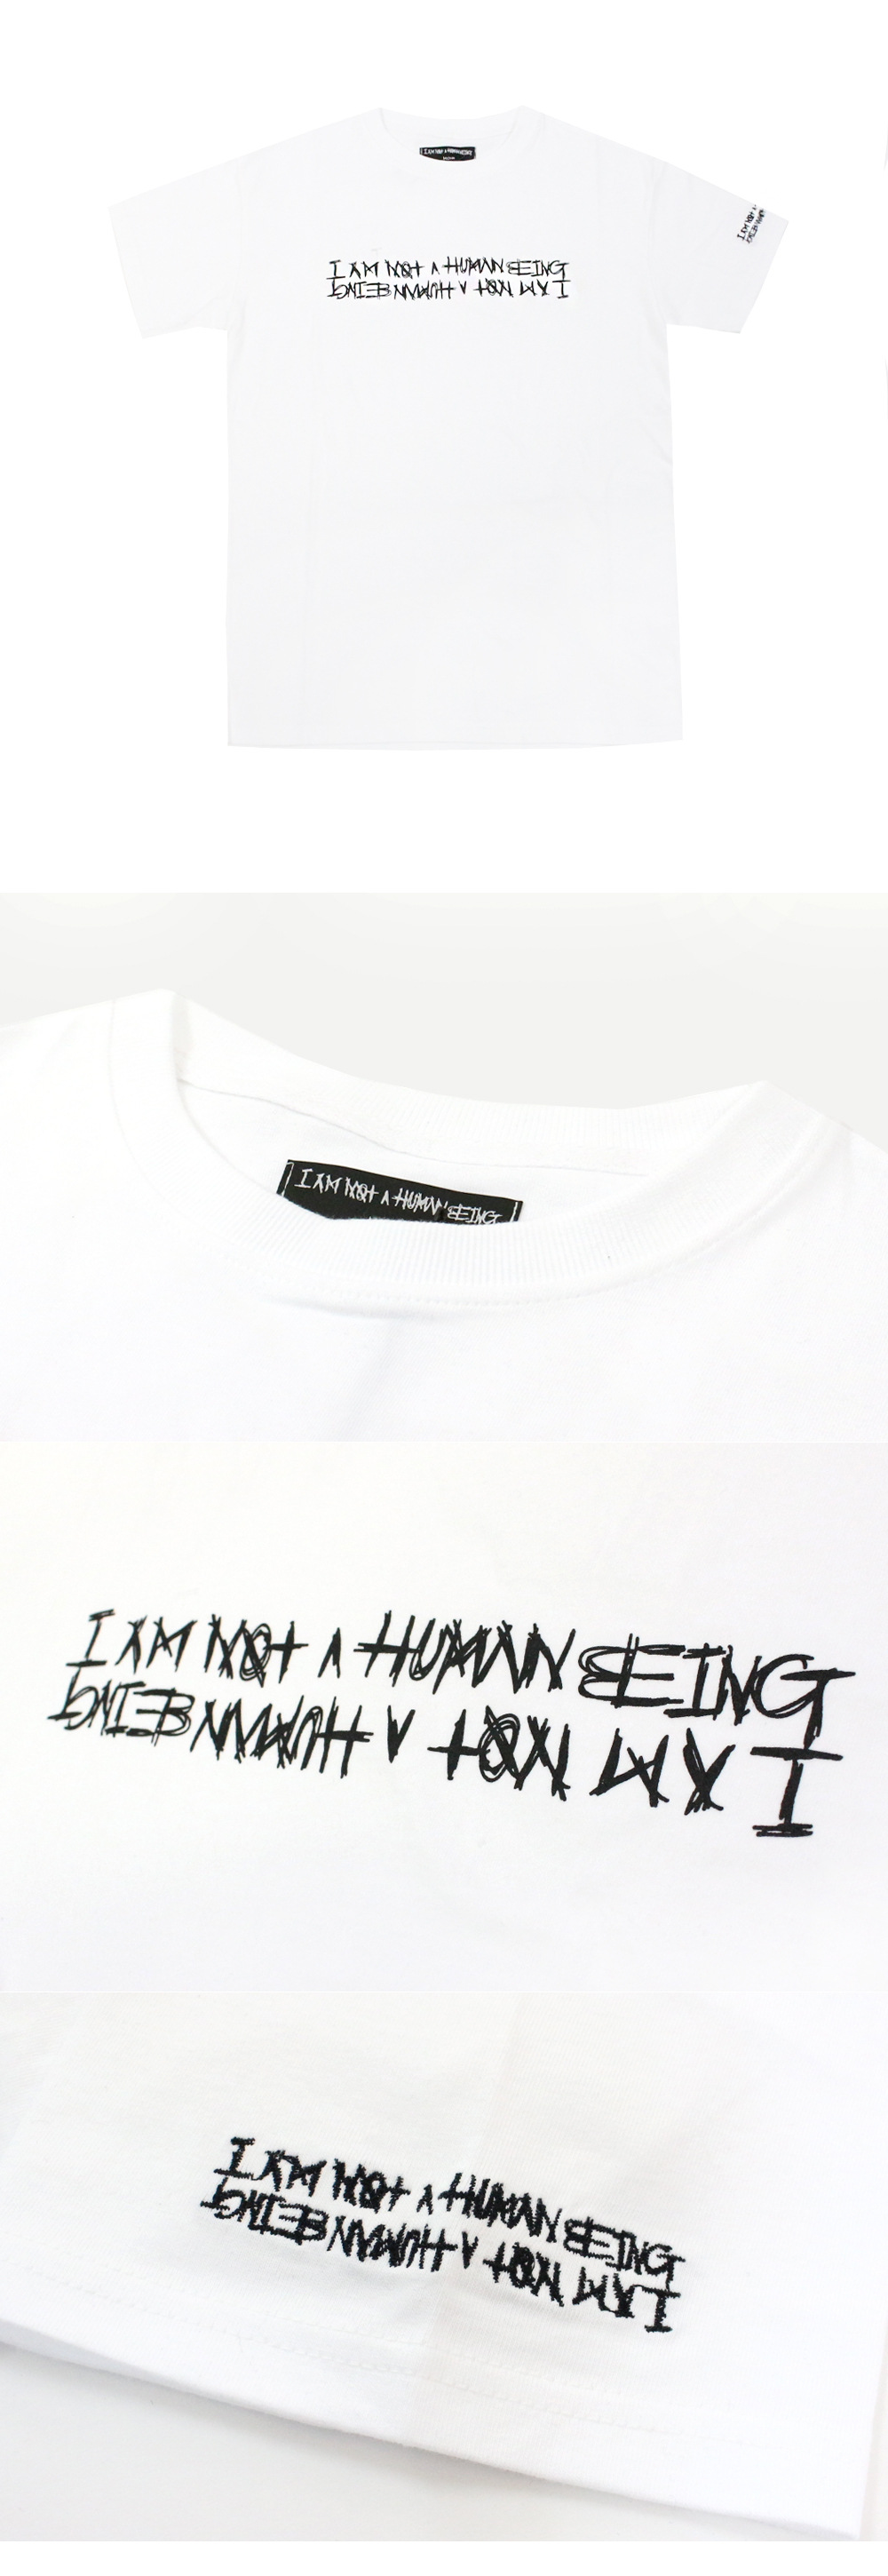 I AM NOT A HUMAN BEING (̿޸պ)